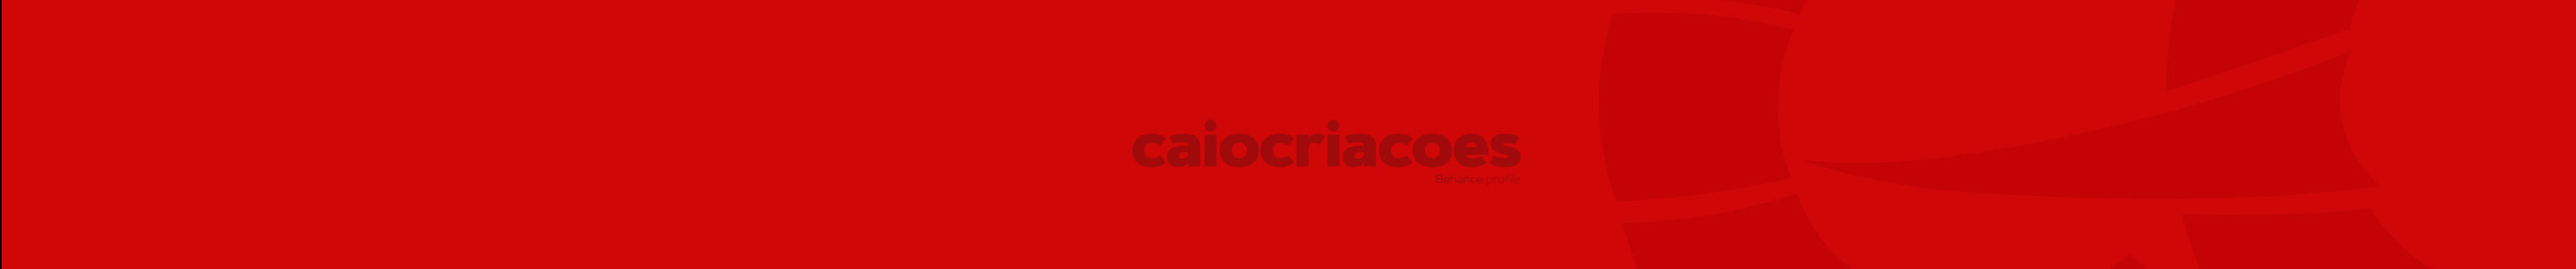 CaioCriações ﾠ's profile banner